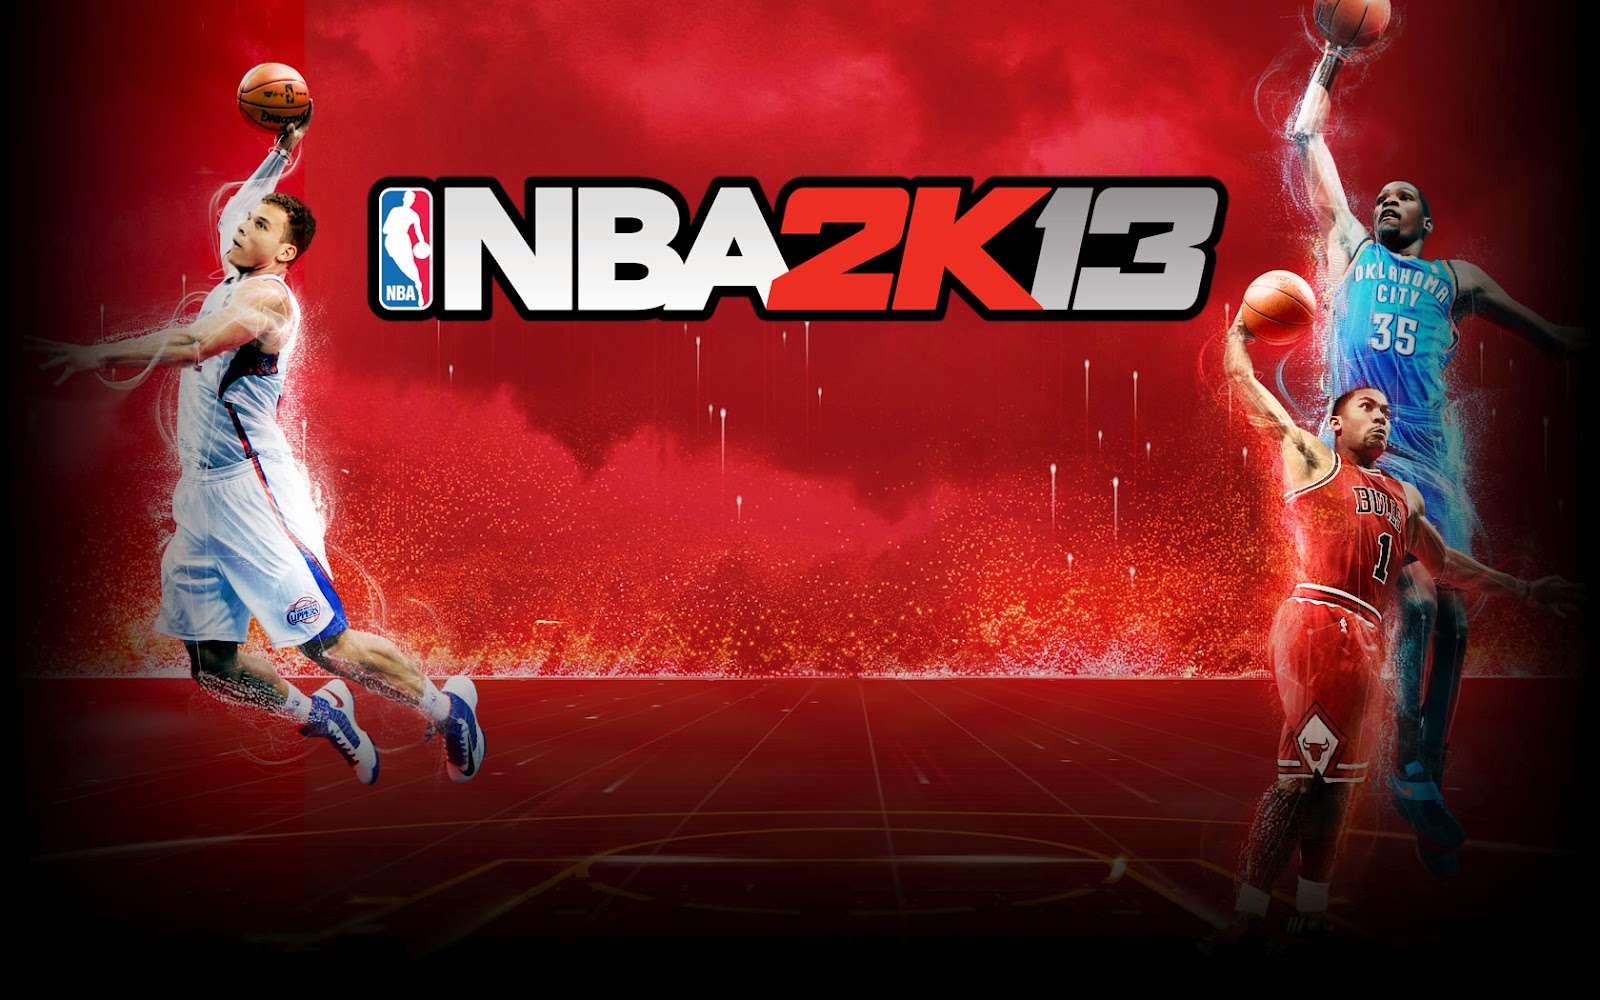 2 k games. NBA 2k13 обложка. NBA 2k13 (PSP). NBA 2k 12 ПК. NBA 2k13 Wii u.